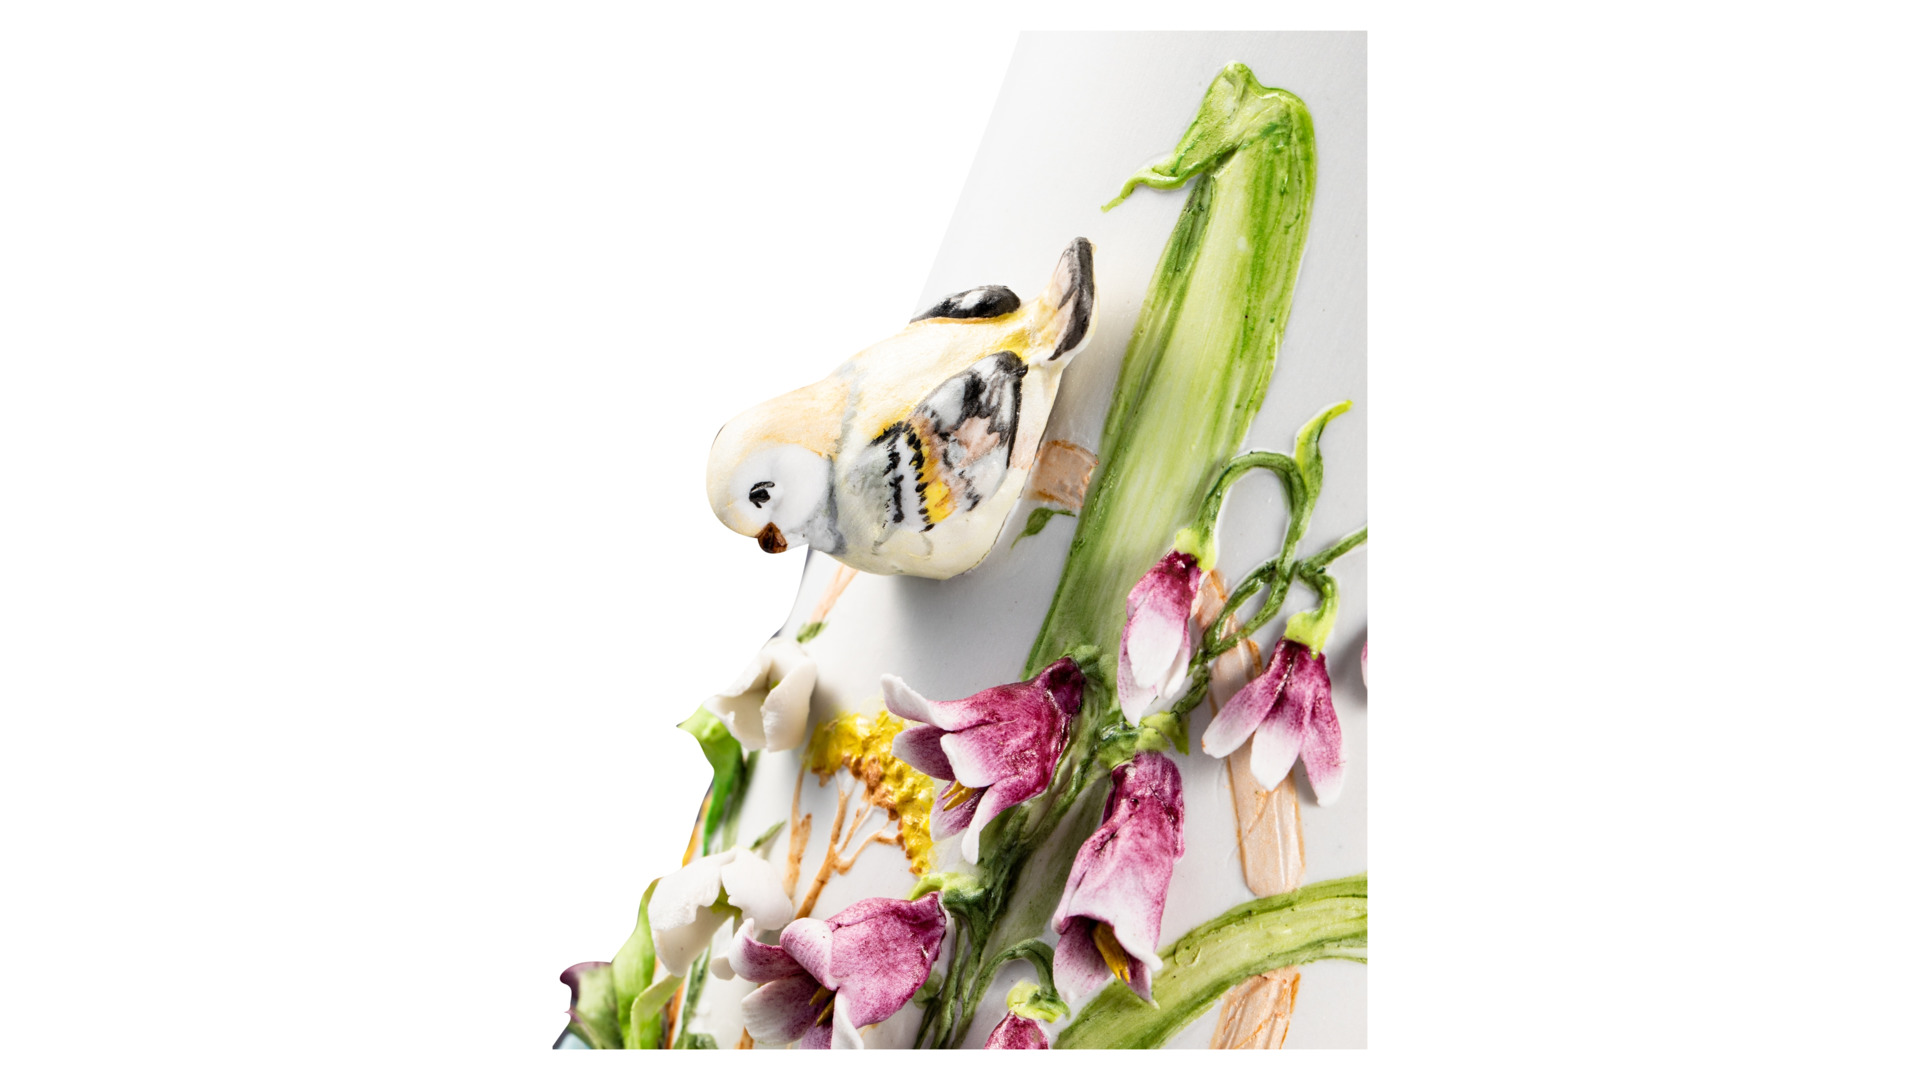 Ваза настольная Delta-X Лилии и другие цветы Торжество 38 см, фарфор, бежевая